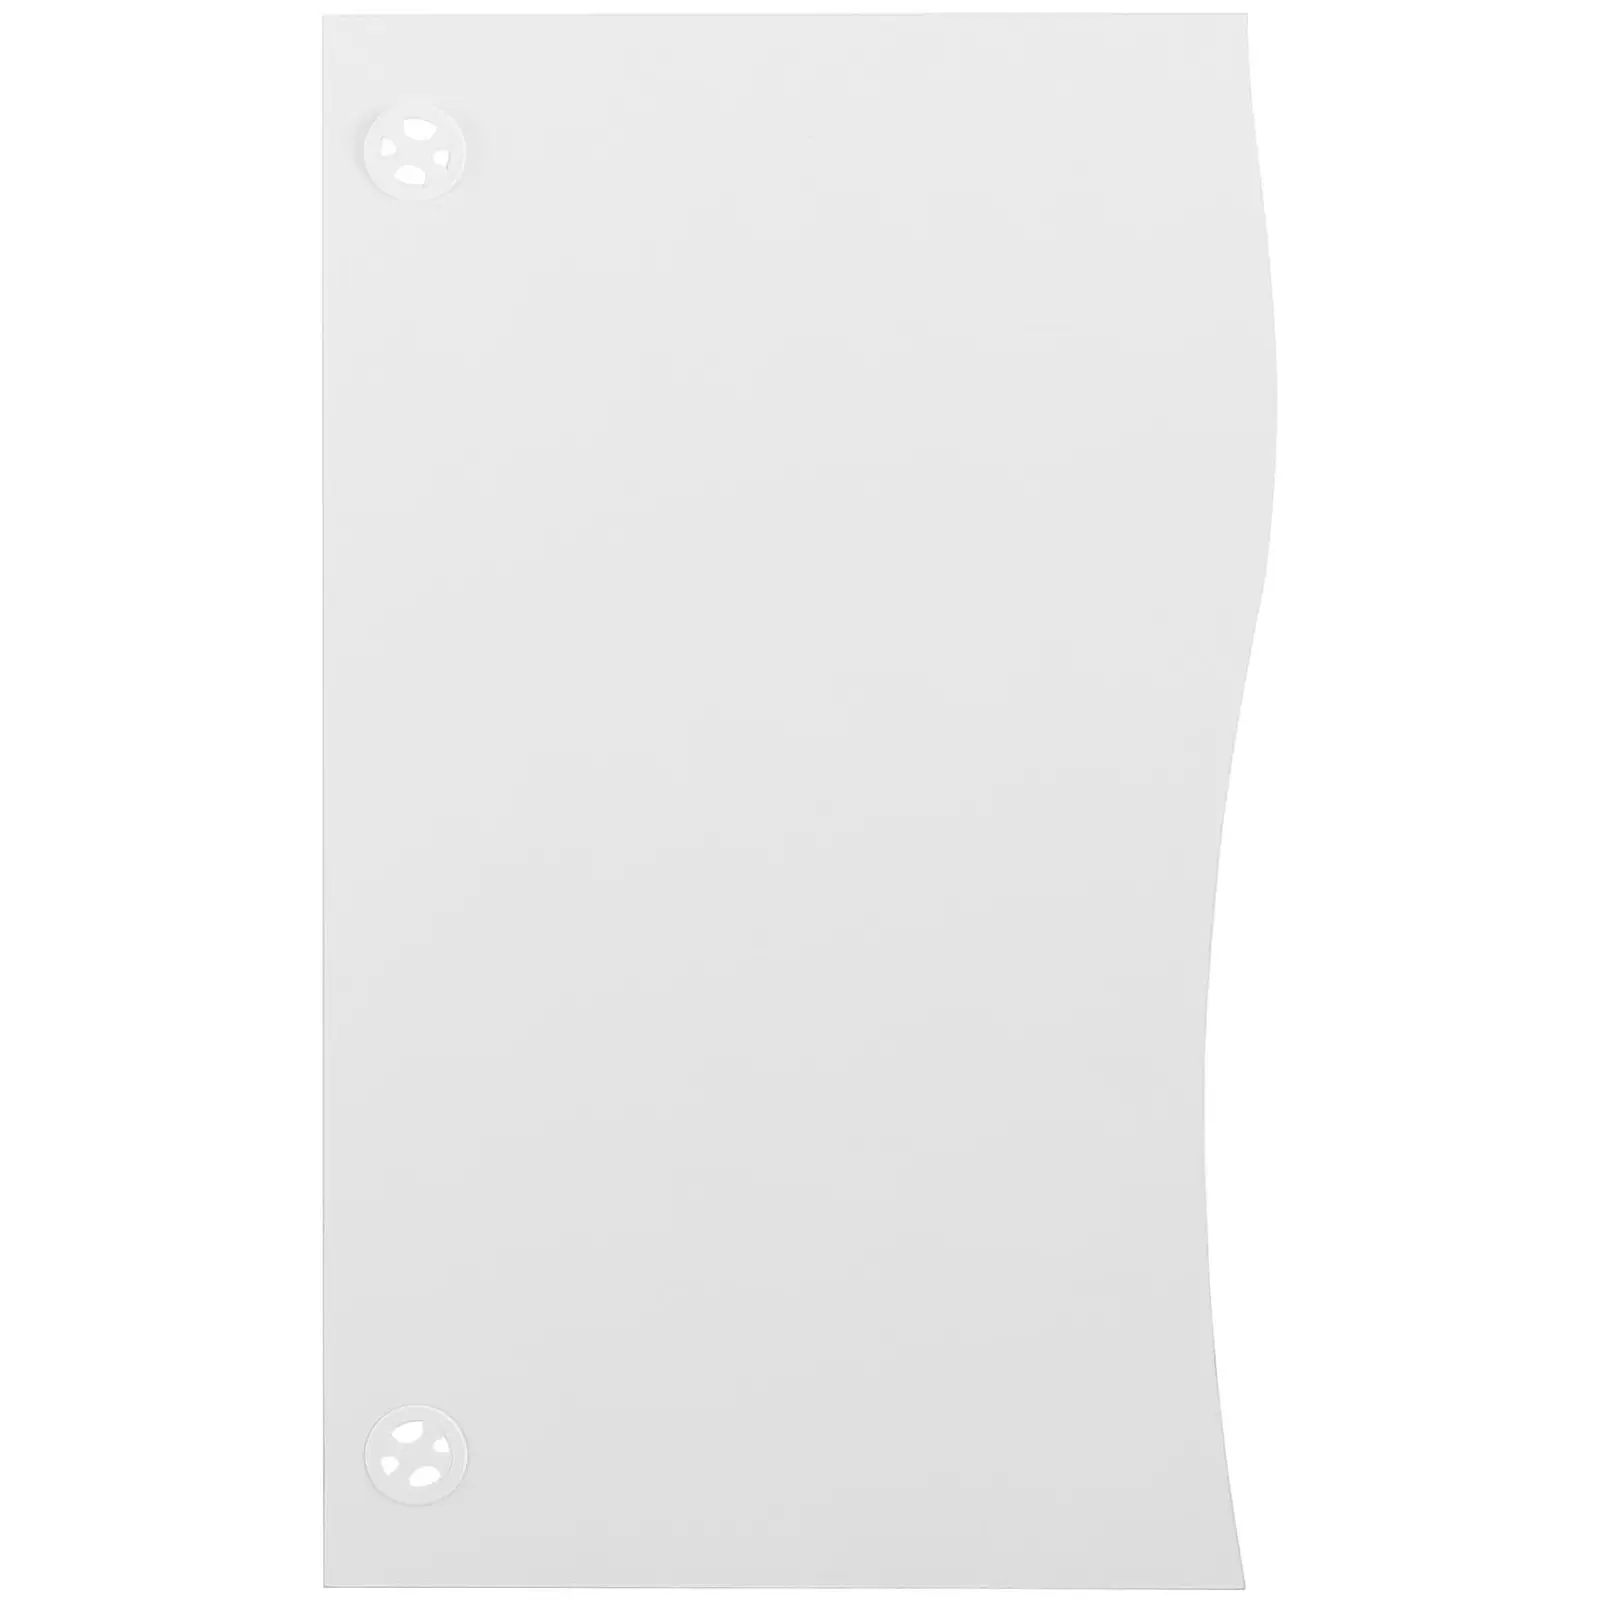 Biurko biurowe białe nowoczesne - 120 x 73 cm